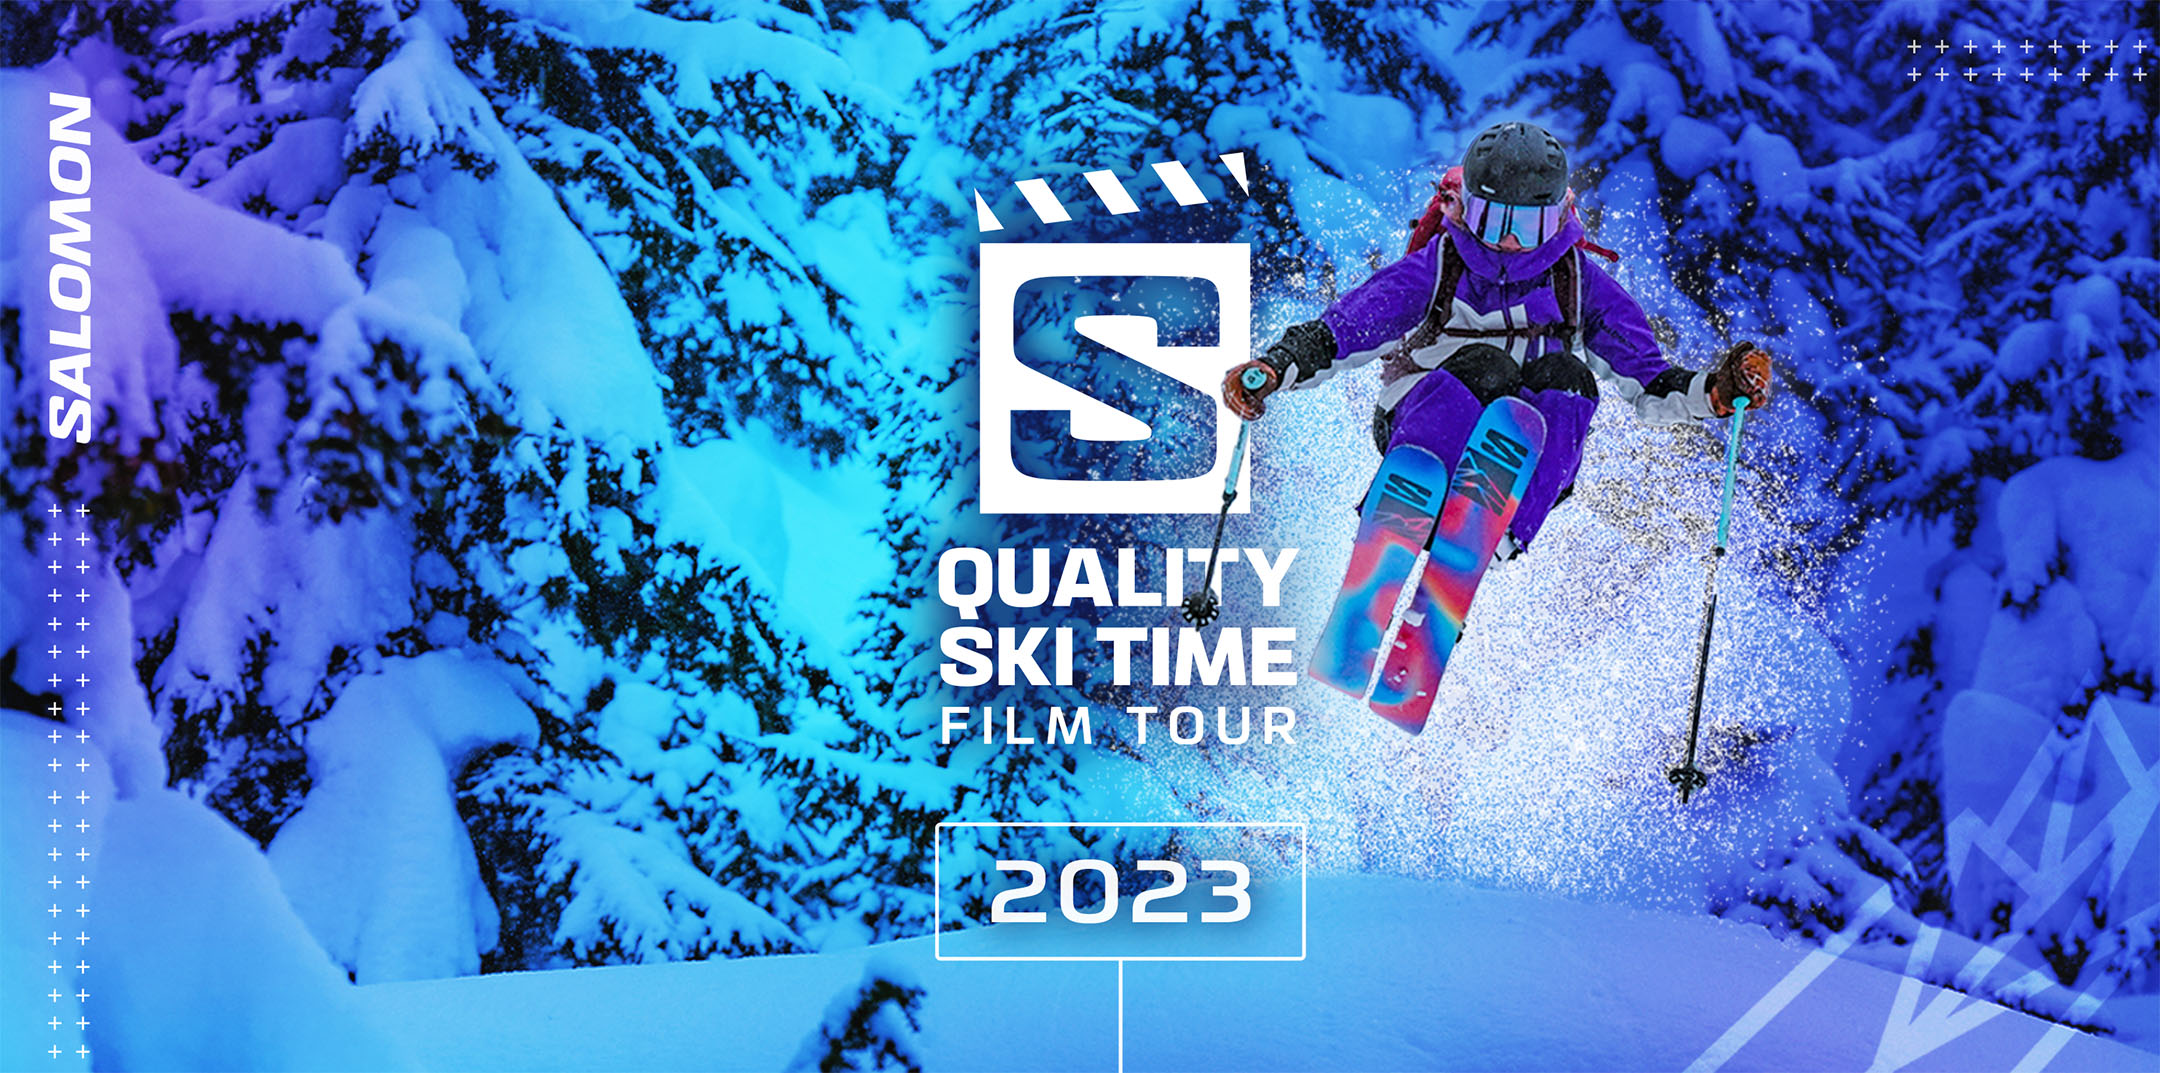 Quality Ski Time Film Tour promo